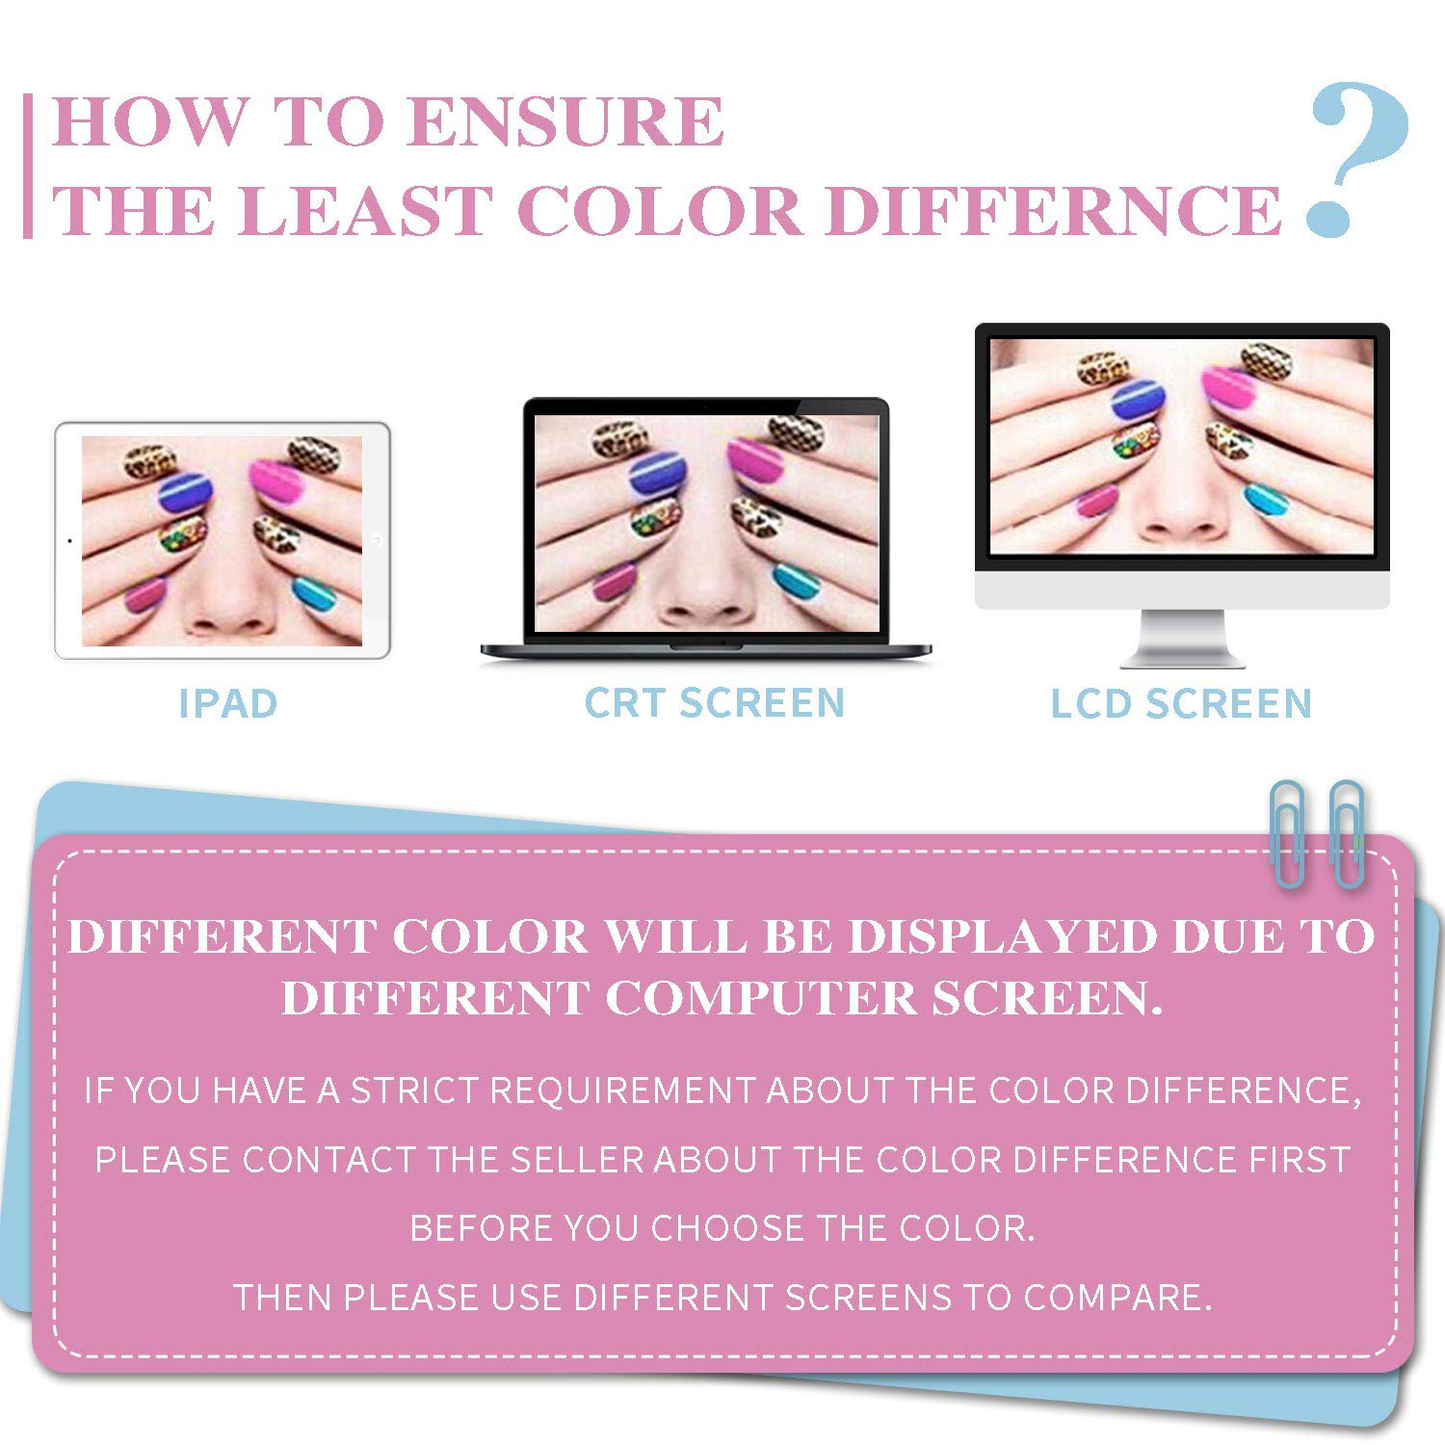 Red Pink Purple Gel Nail Polish Set - Candy Lover Soak off UV LED Gel Polish Set 8 Colors Home Gel Manicure Kit